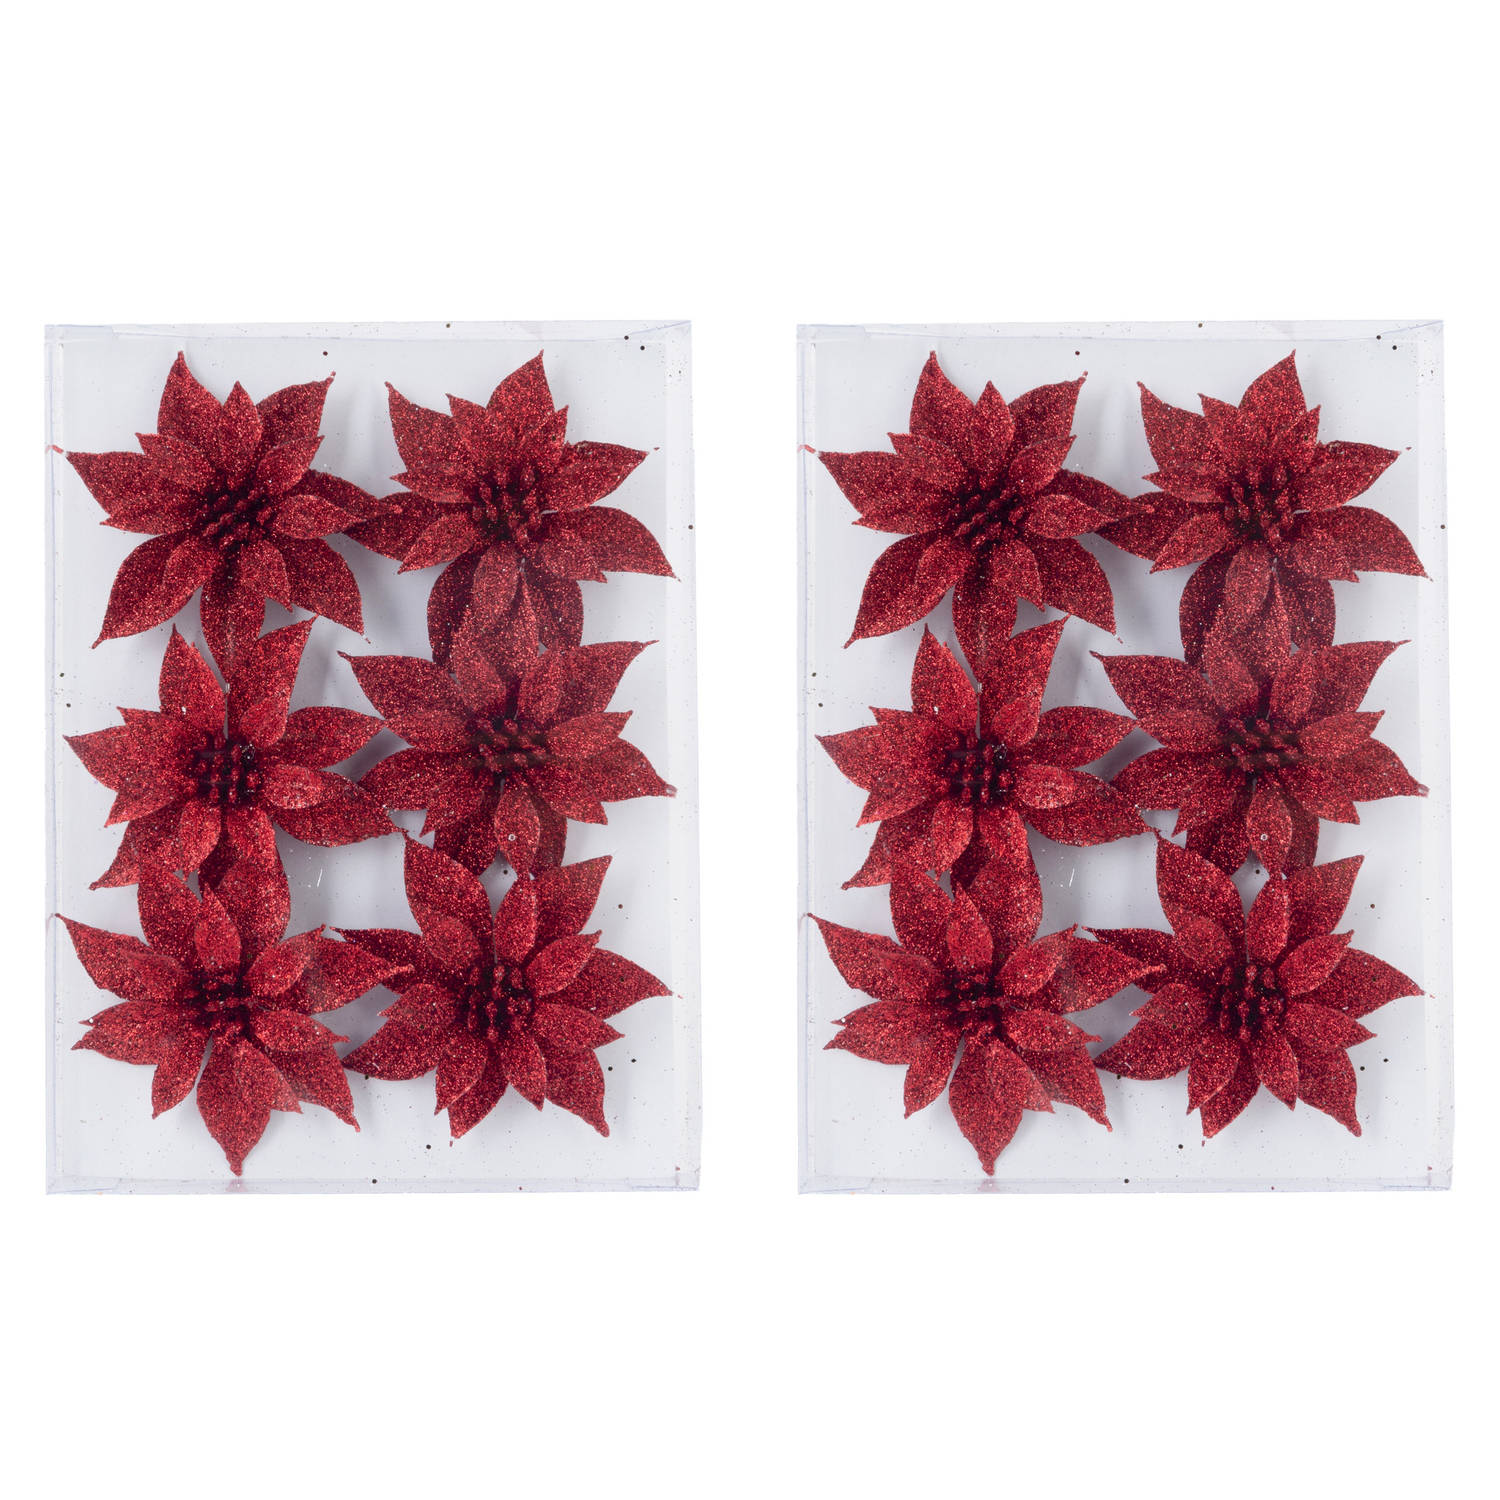 12x stuks decoratie bloemen rozen rood glitter op ijzerdraad 8 cm Kersthangers